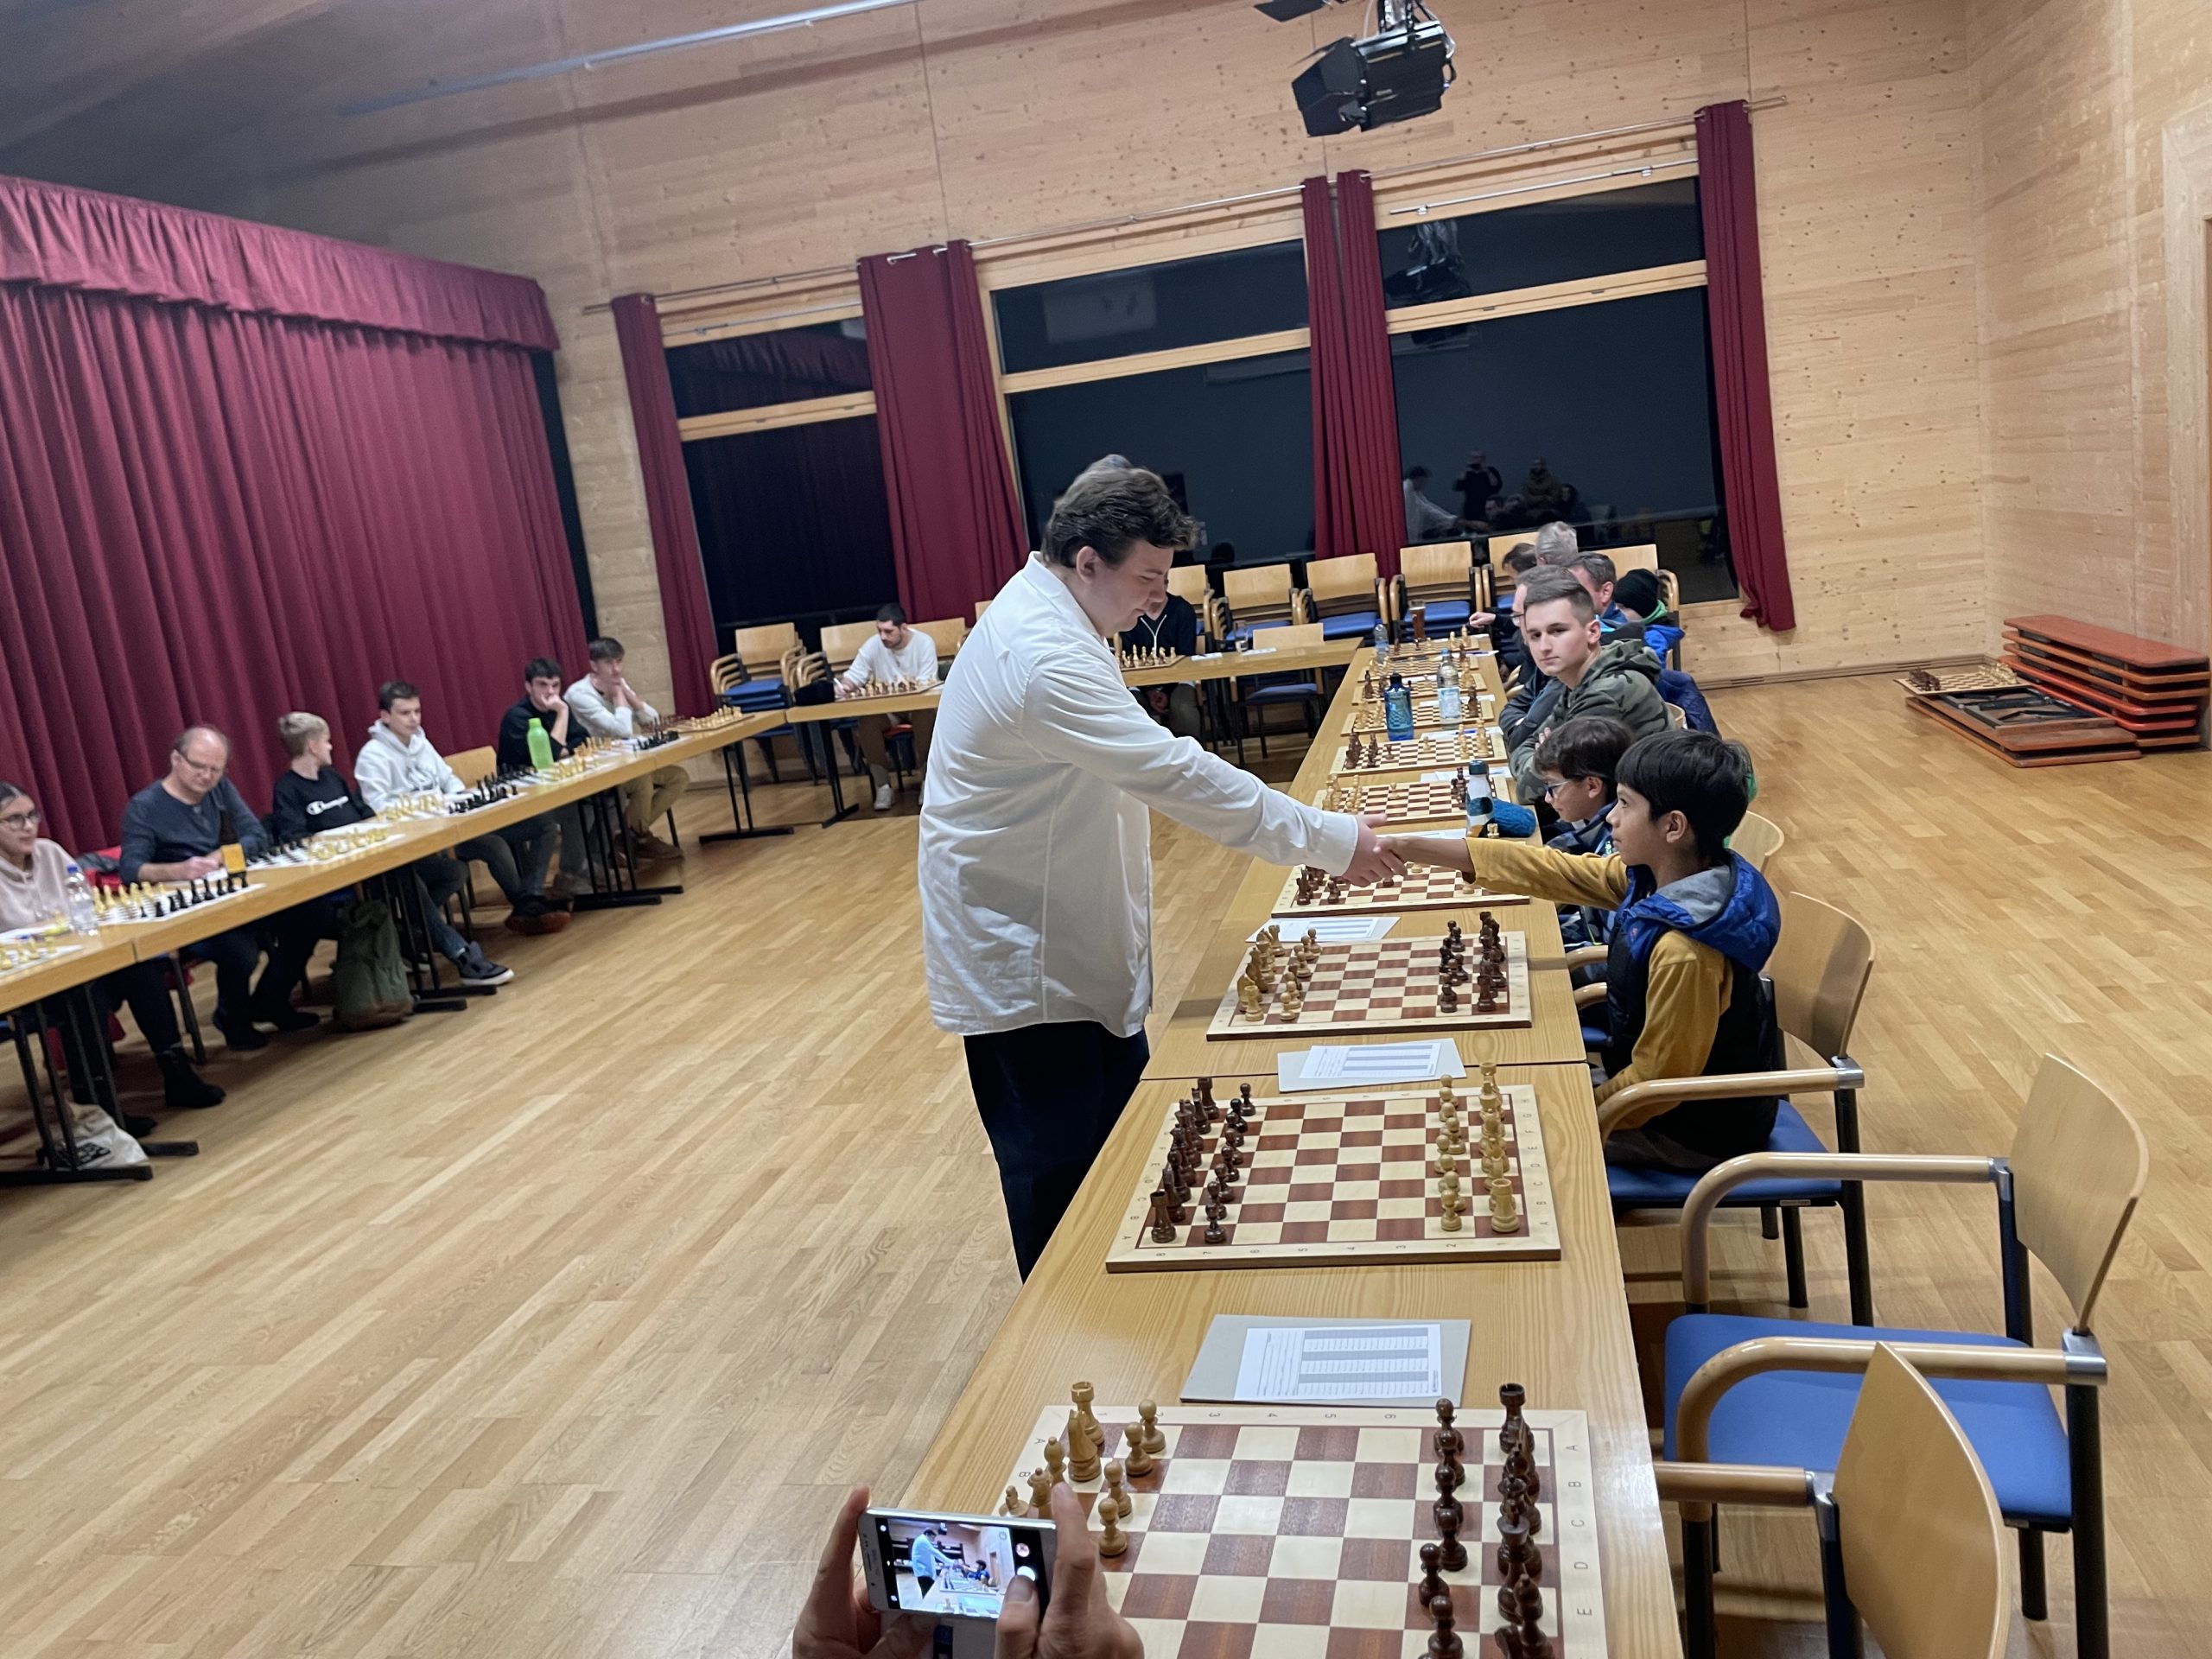 Simultan mit Schach-Großmeister Krivoborodov – nur Fabian Heim gelang ein Remis